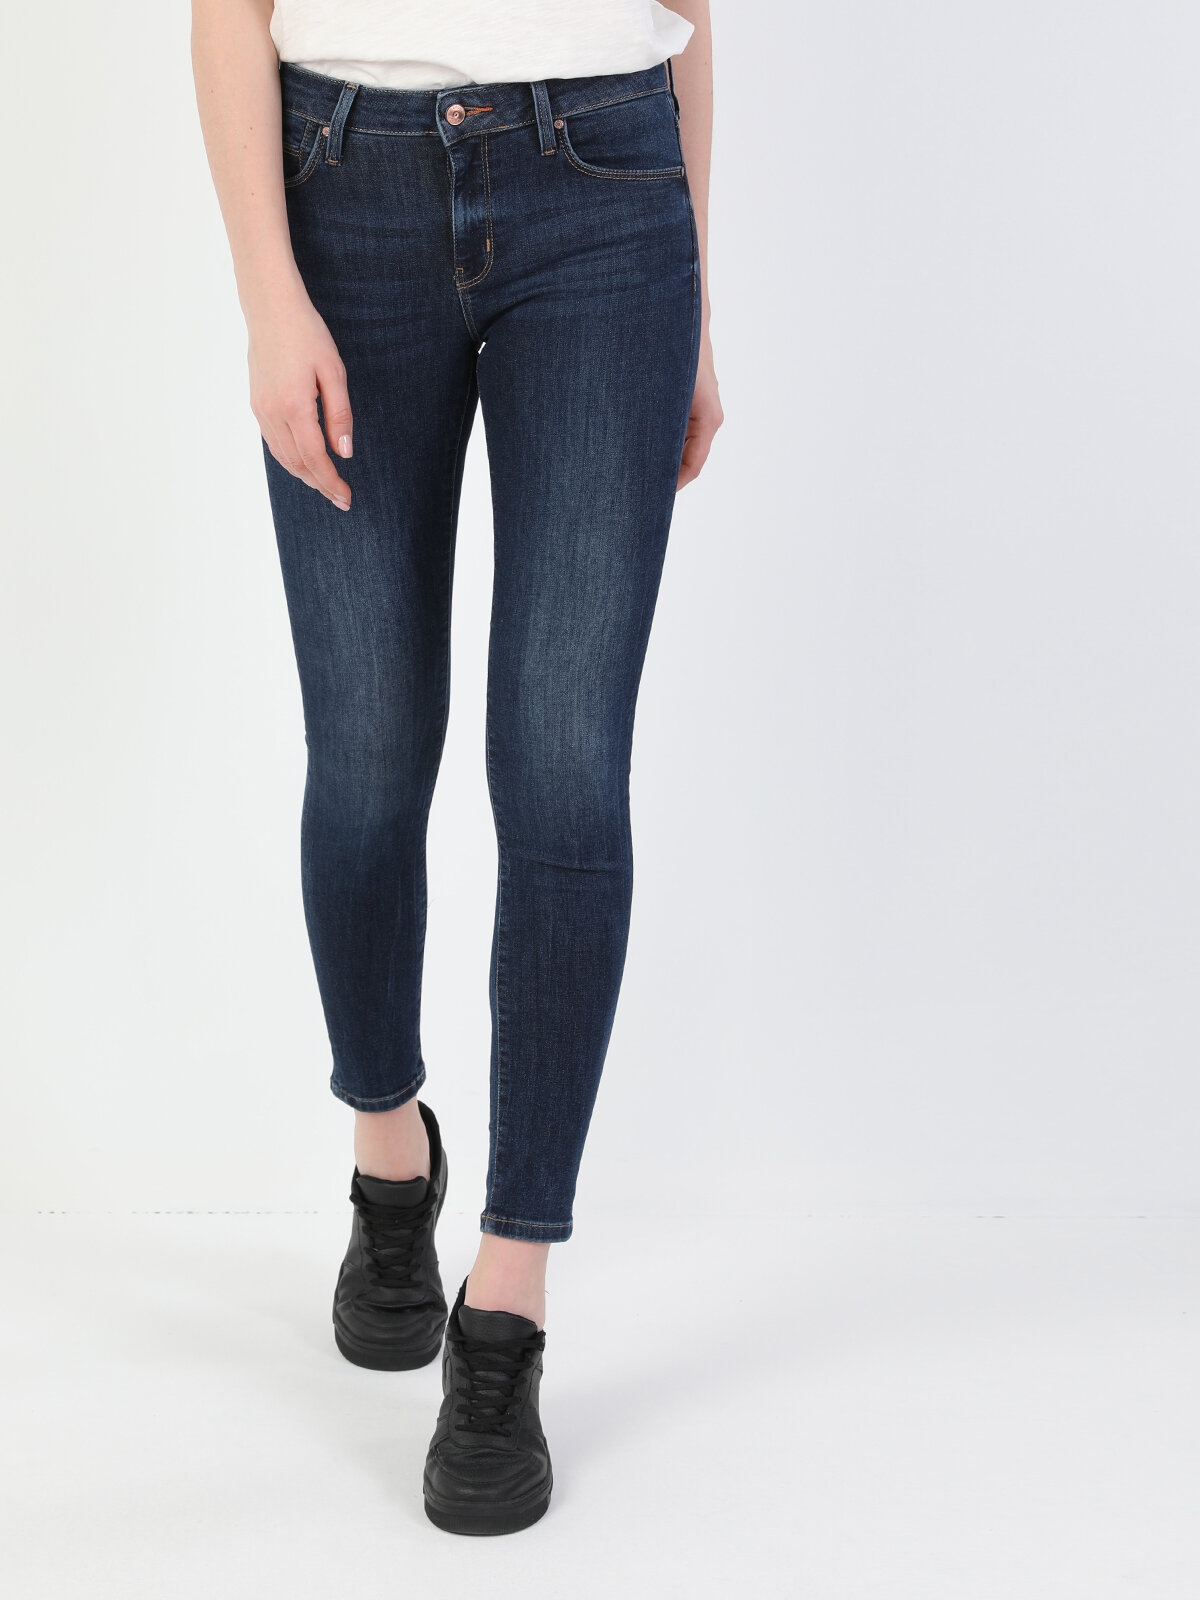 Afișați detalii pentru Pantaloni De Dama Albastru inchis Super Slim Fit 759 LARA